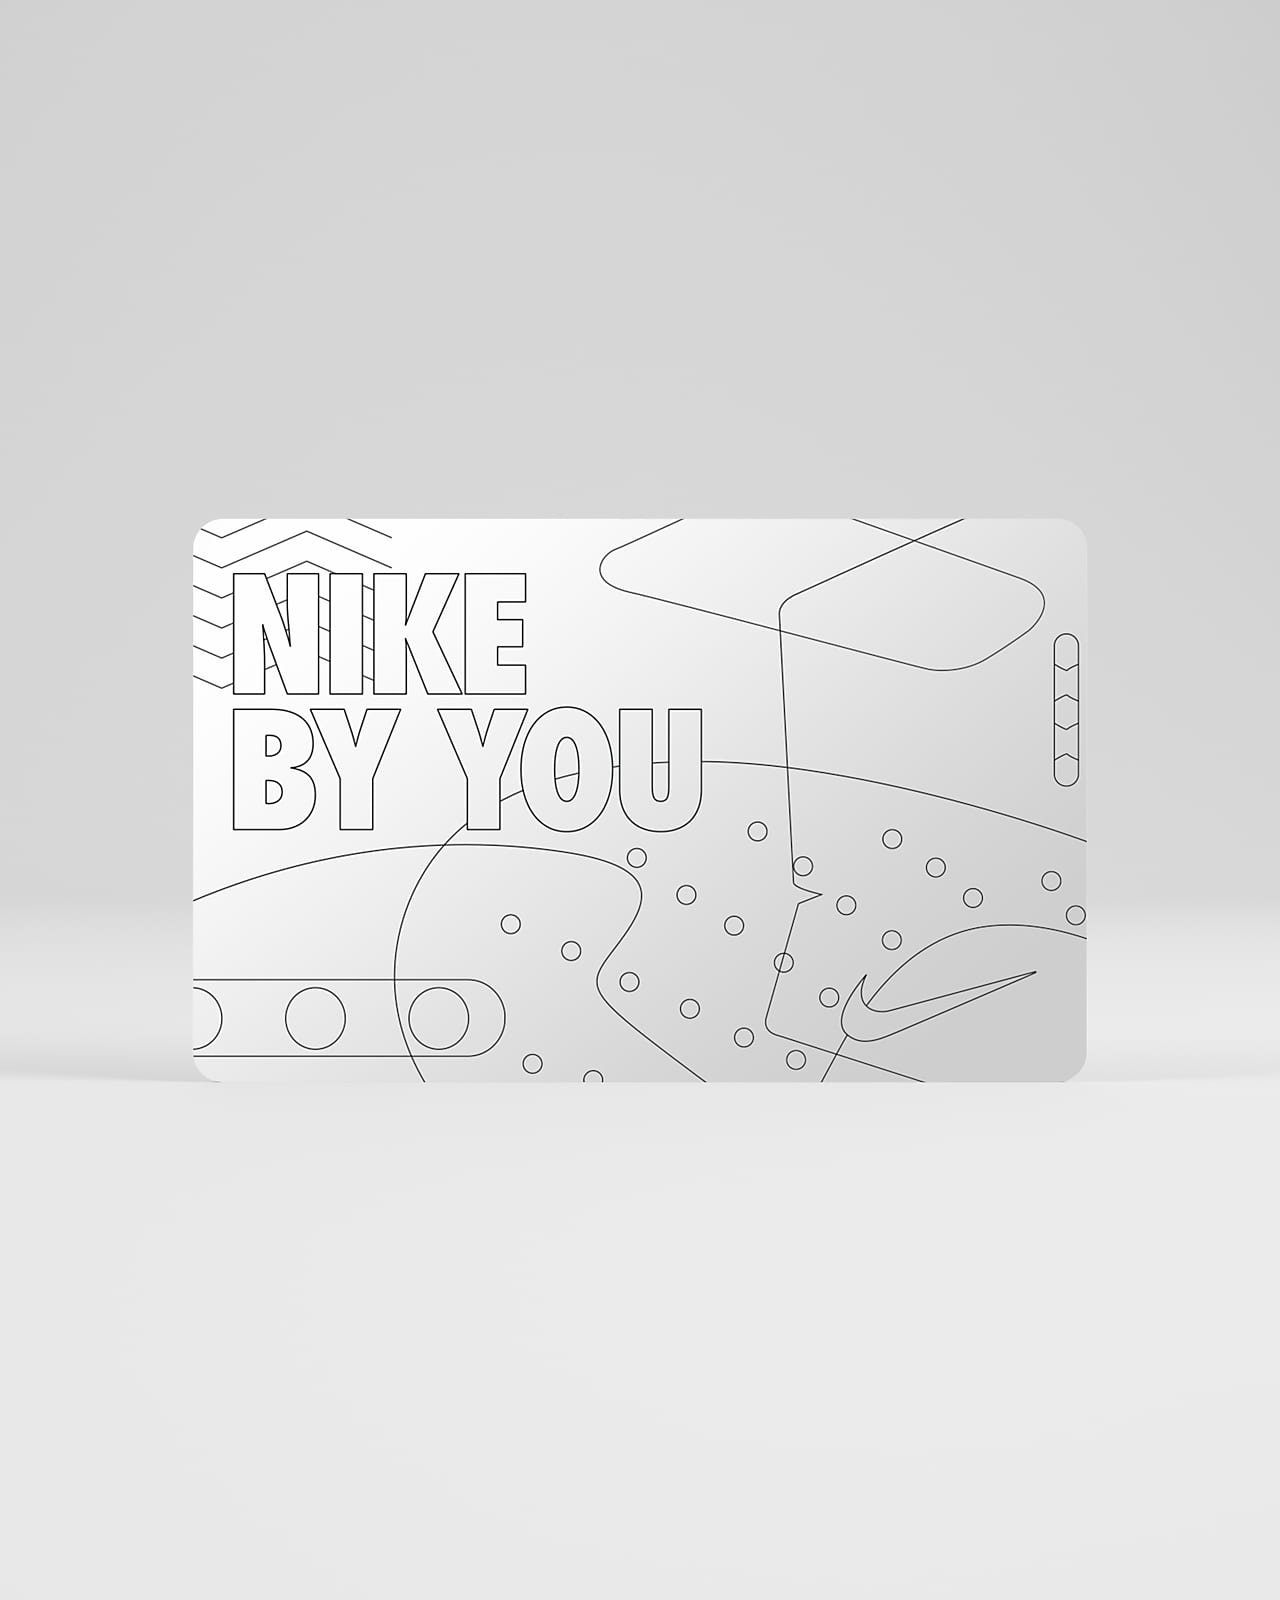 La tarjeta de regalo digital Nike llega por correo electrónico en aproximadamente 2 horas o menos